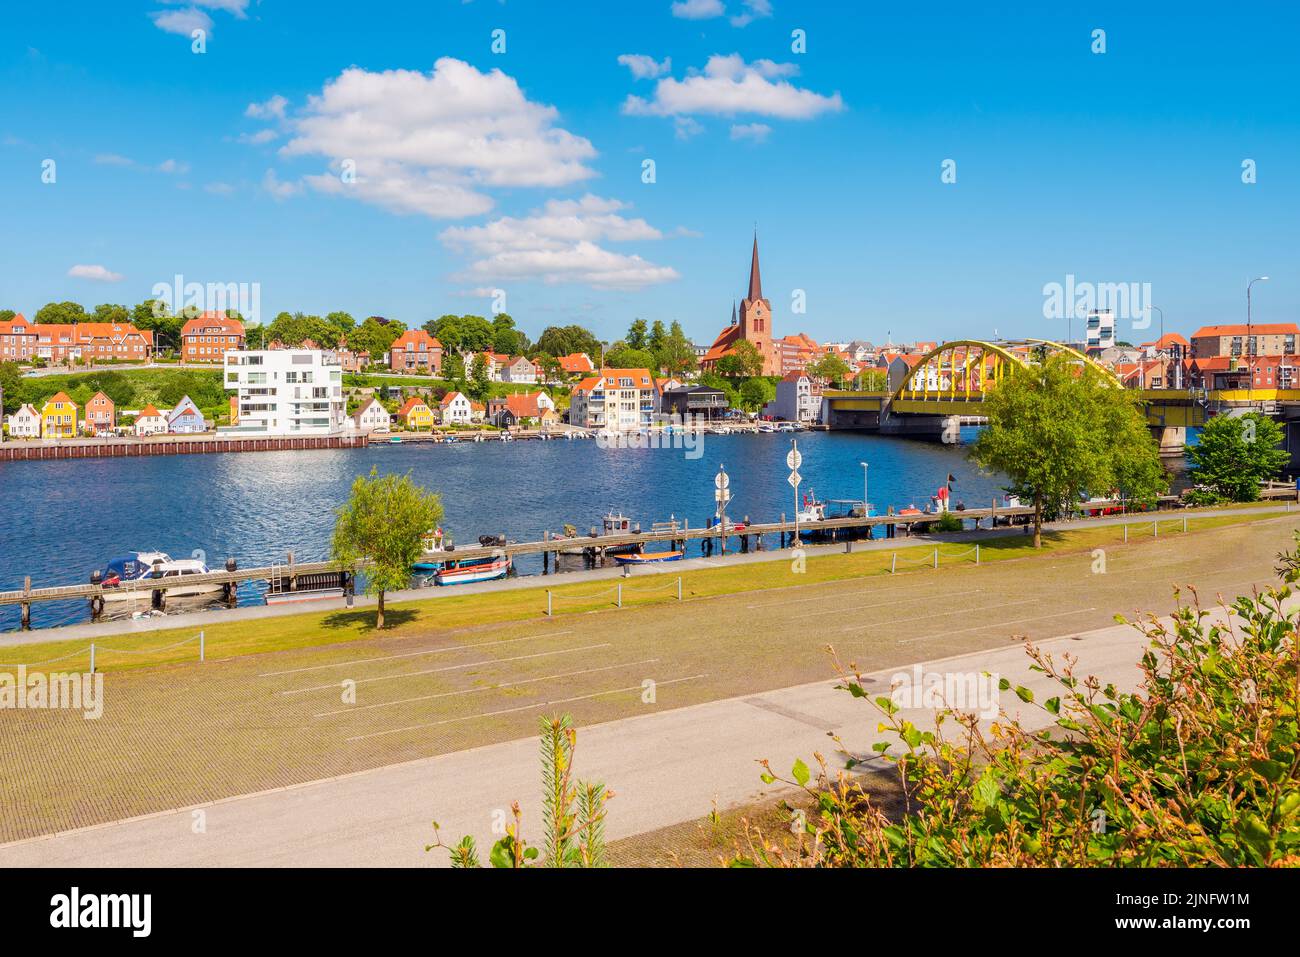 Vue sur la ville de Sonderborg, Jutland, Danemark. La ville, qui compte environ 28 000 000 habitants, est un centre de commerce, d'industrie et d'éducation Banque D'Images